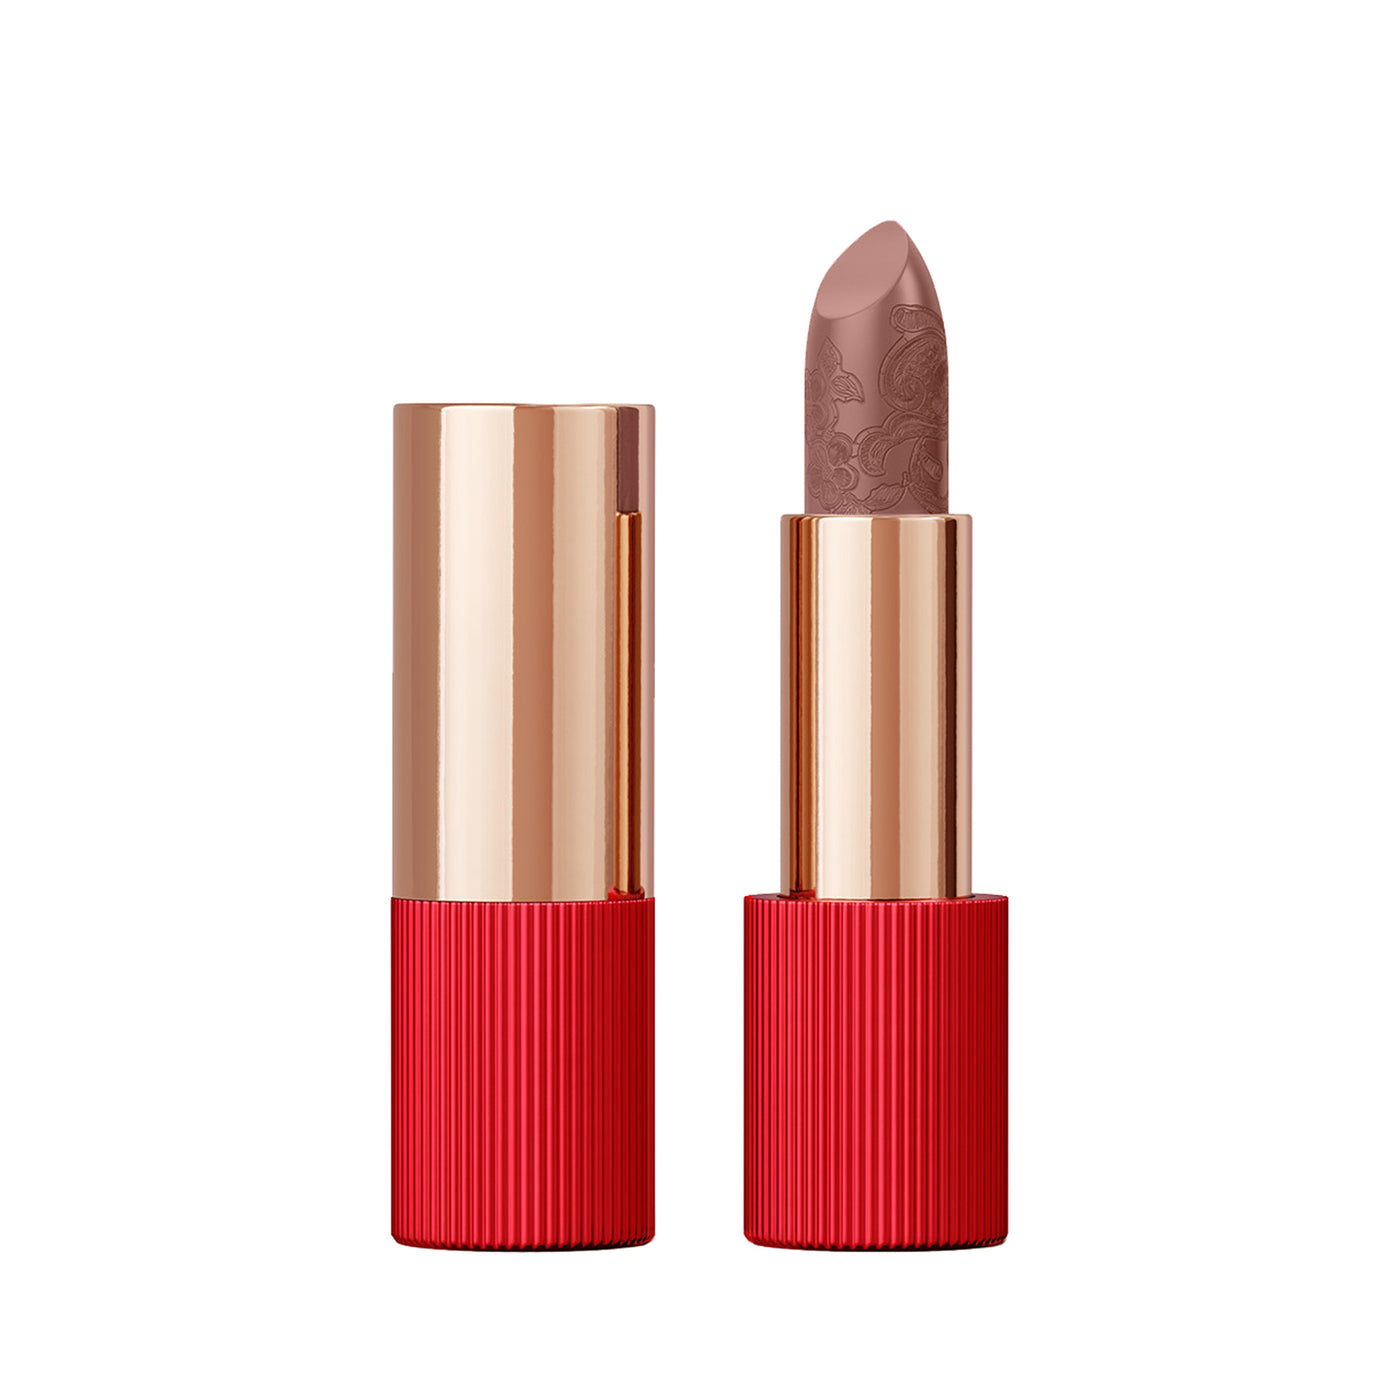 La Perla Lipstick 3.5g Cinnamon Red